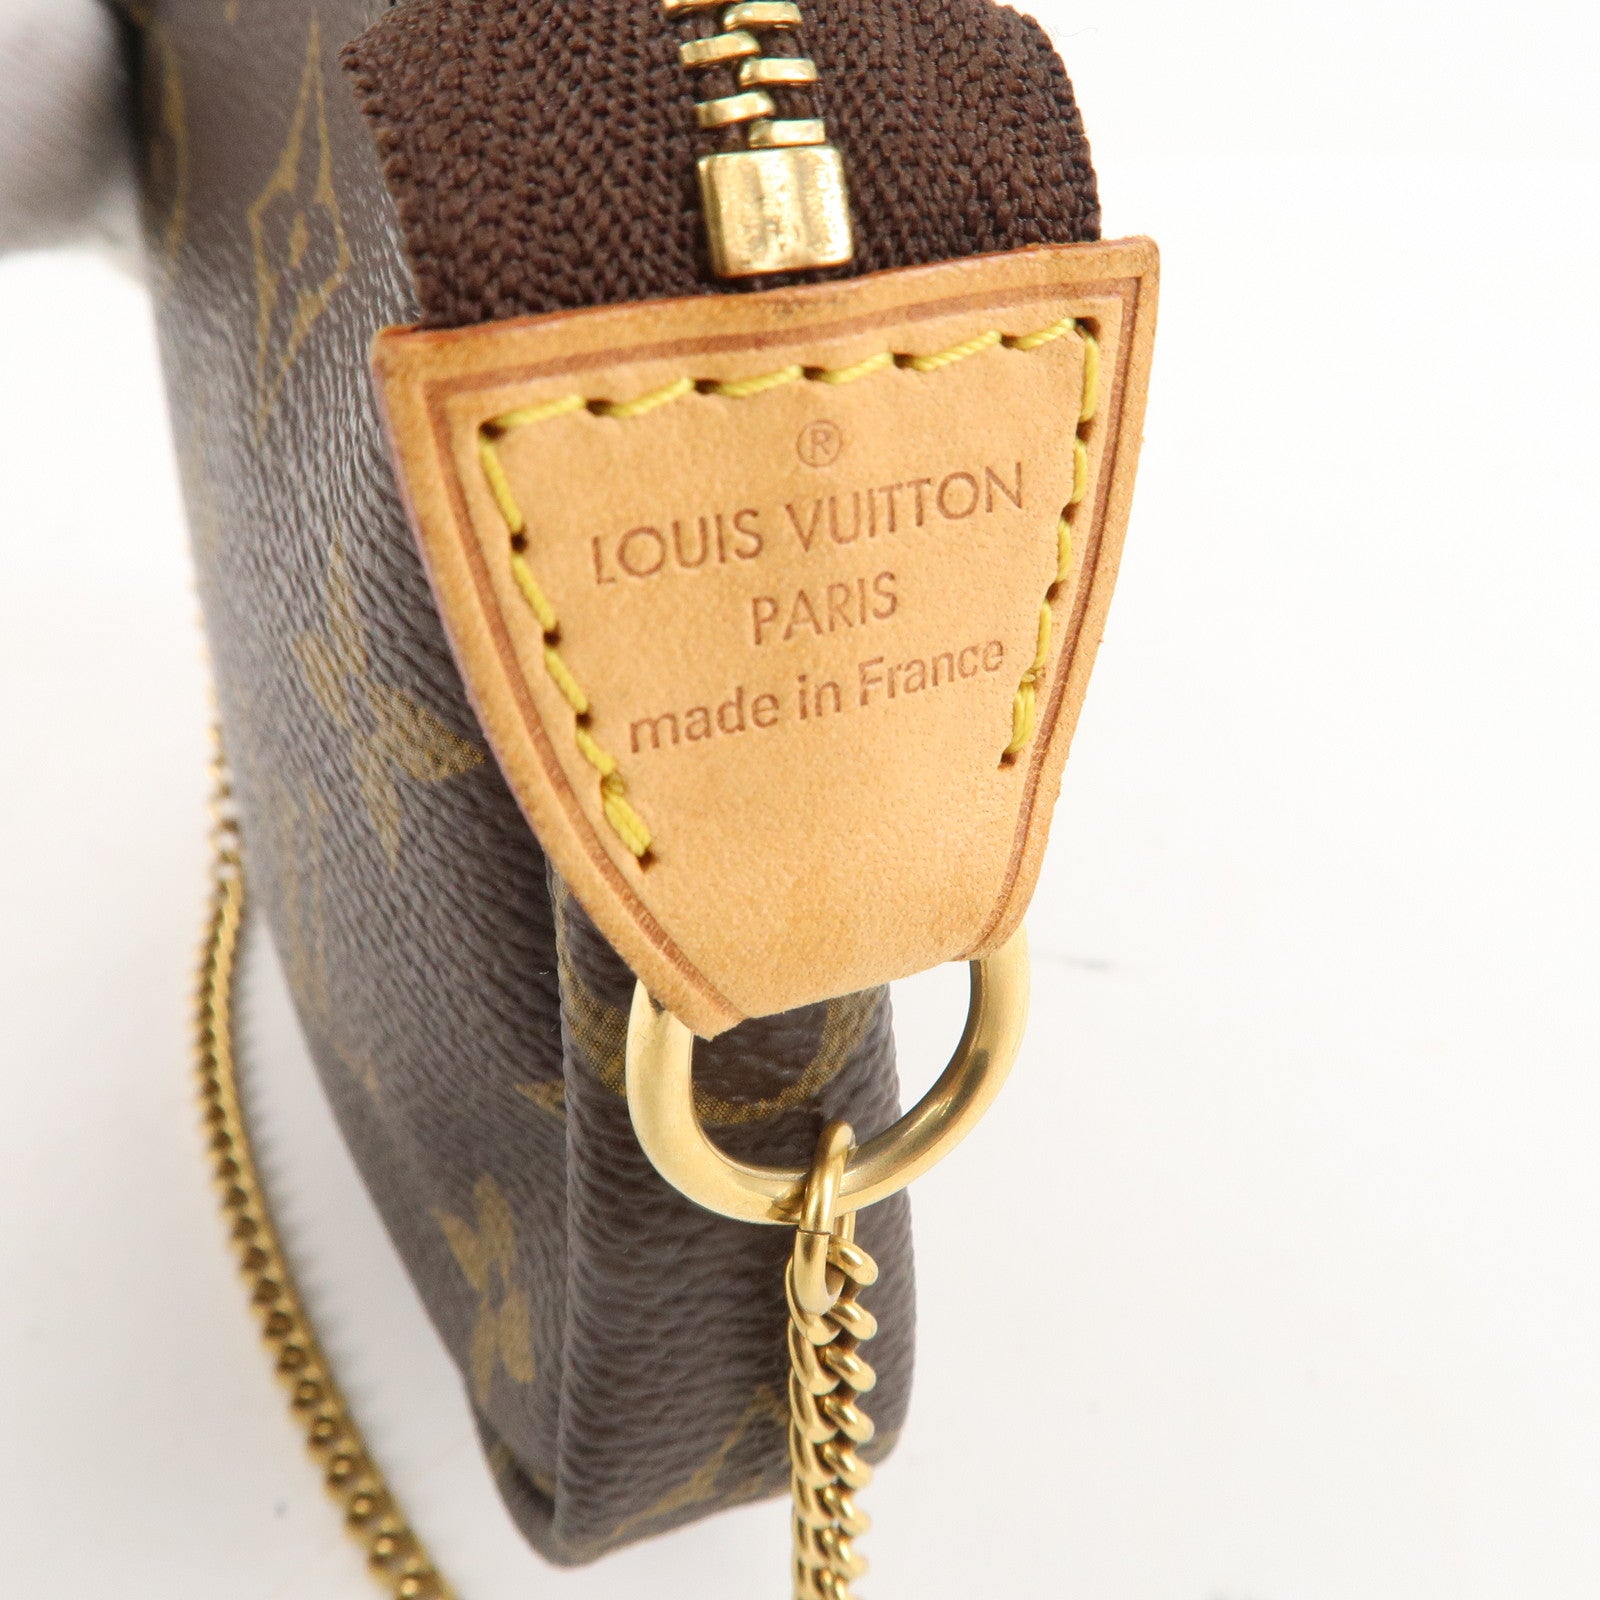 Louis Vuitton Monogram Mini Pochette Accessories Made in France